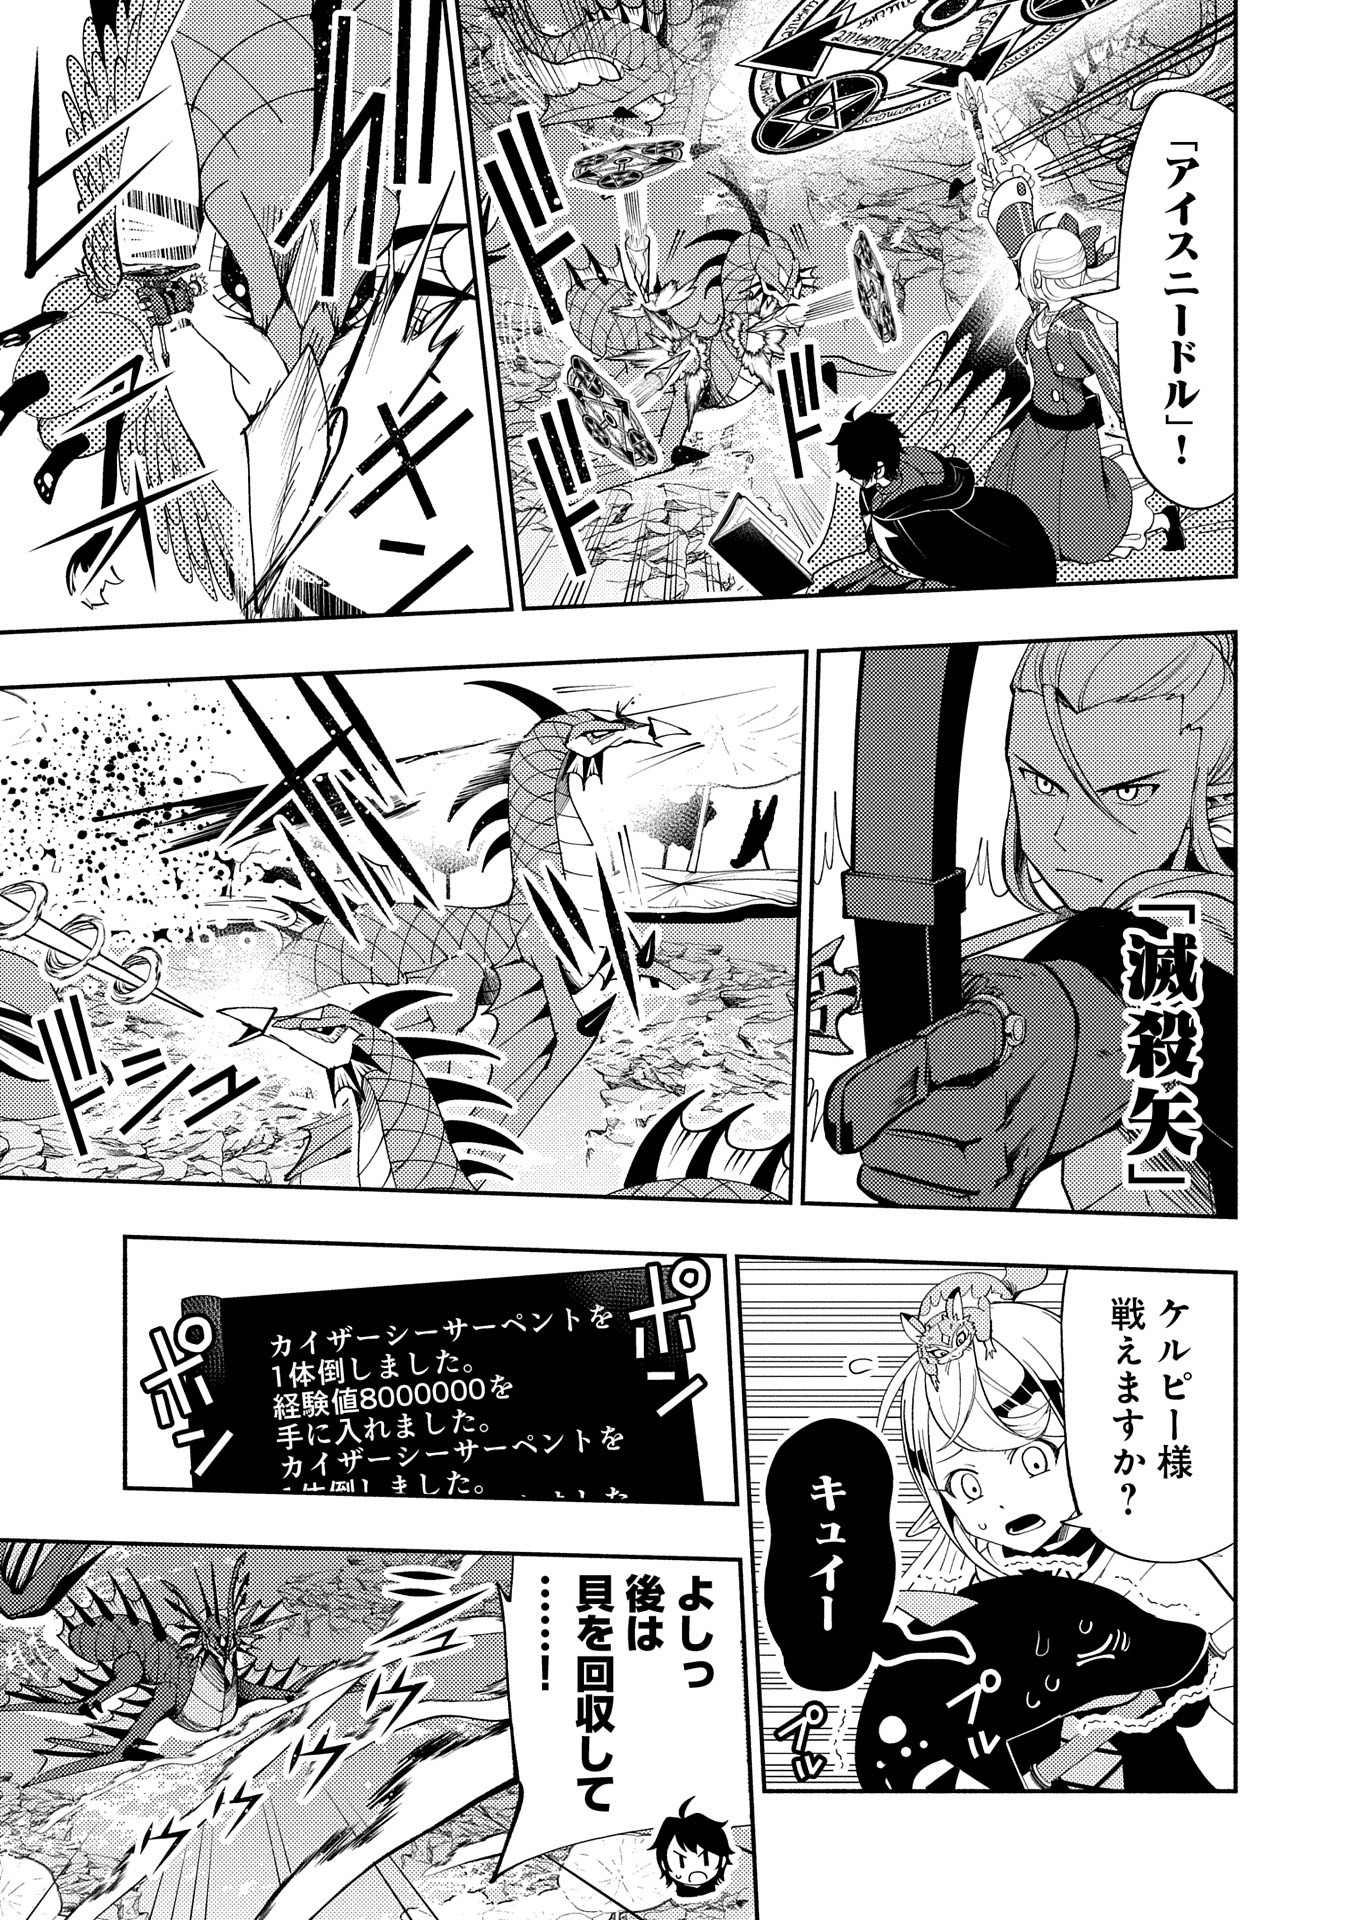 Hell Mode: Yarikomi Suki no Gamer wa Hai Settei no Isekai de Musou Suru - Chapter 63 - Page 3